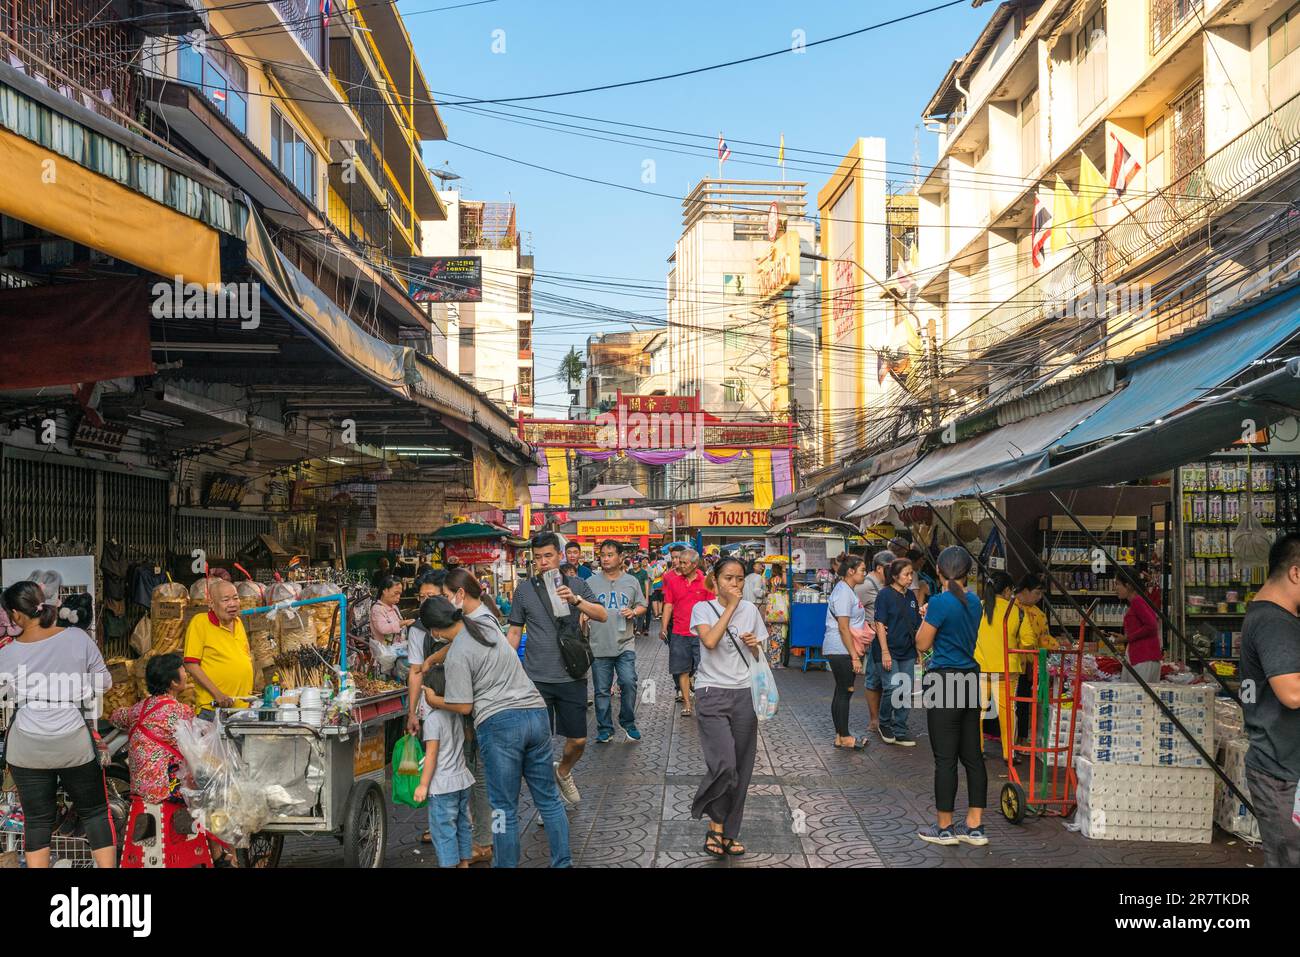 Das Viertel Samphanthawong ist die berühmte, beliebte und geschäftige Chinatown von Bangkok. Zahlreiche Geschäfte, die traditionelle Waren verkaufen Stockfoto